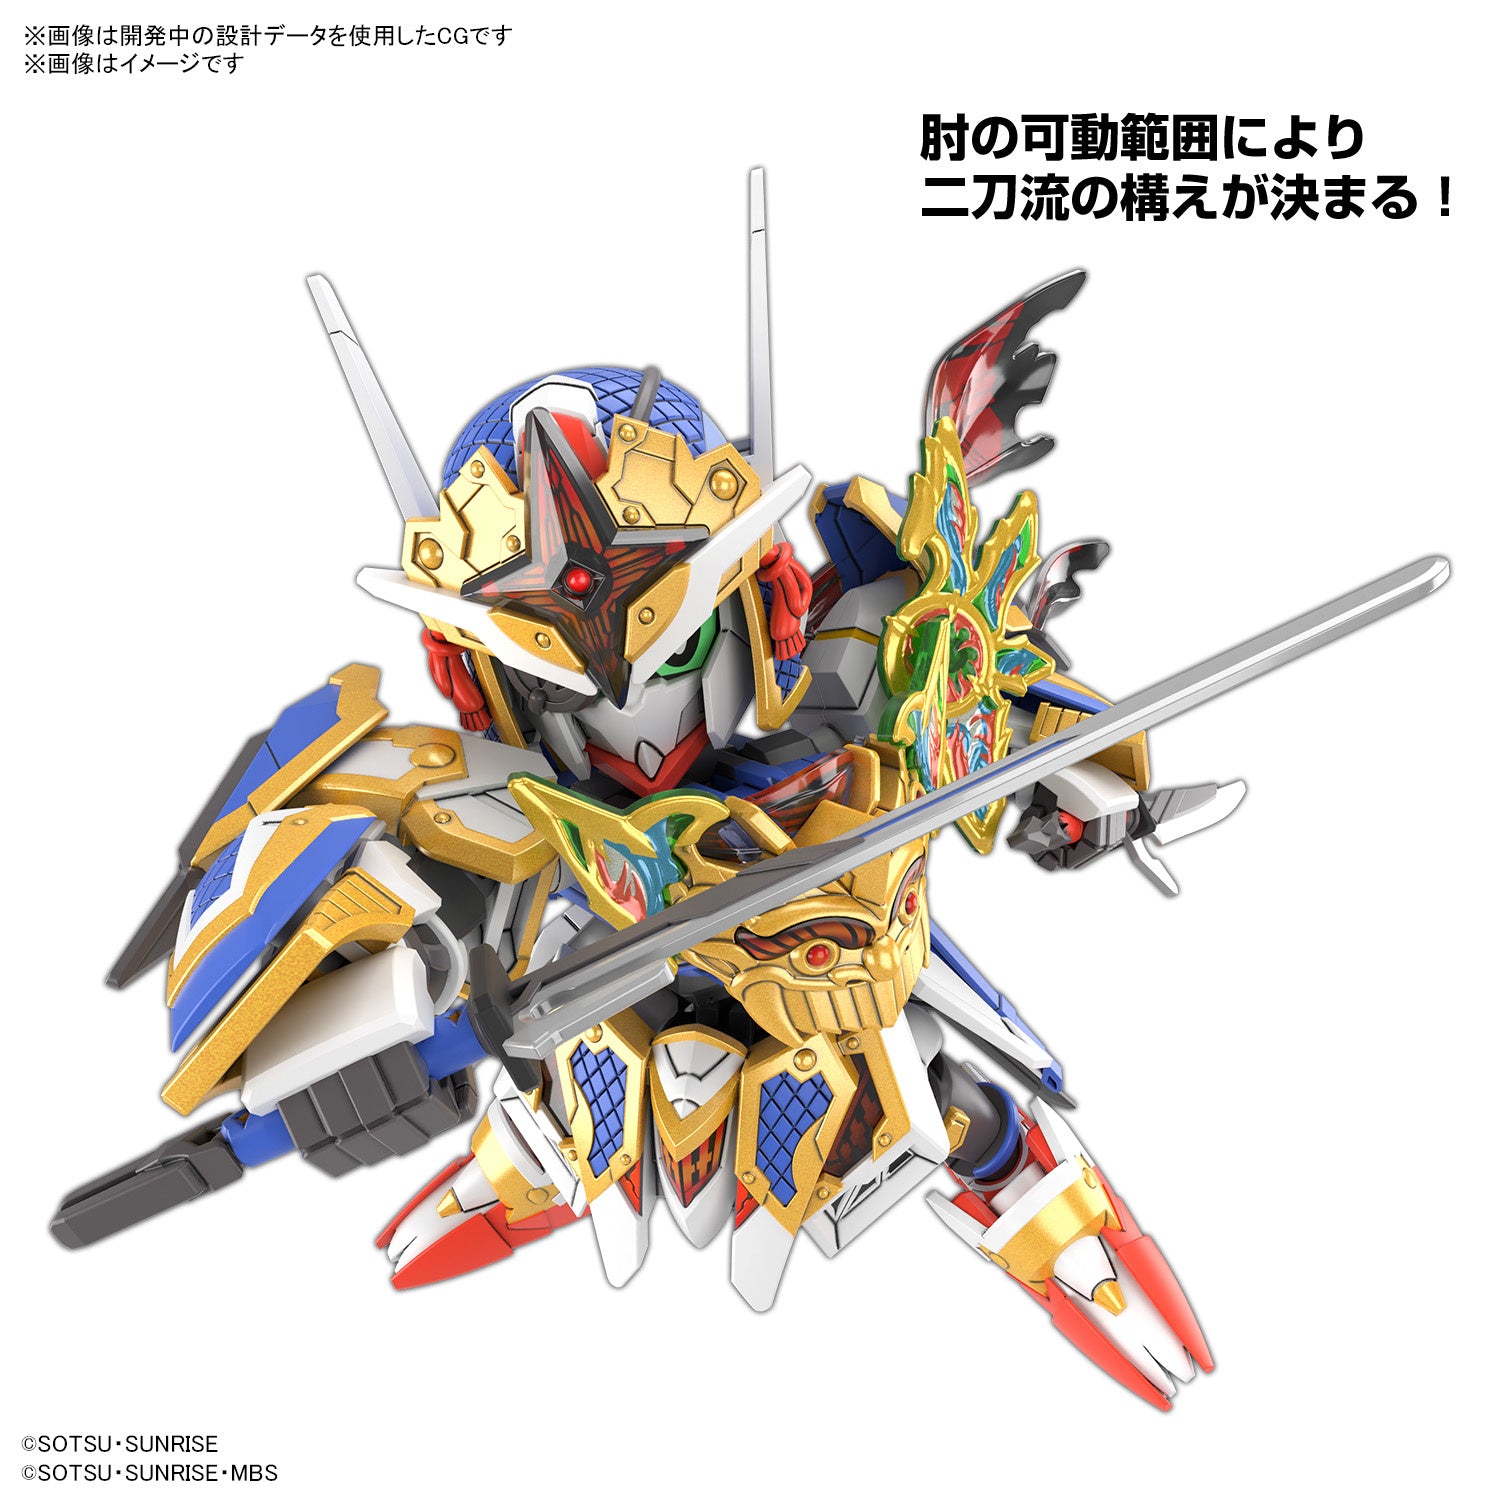 SDW Heroes #35 Onmitsu Gundam Aerial